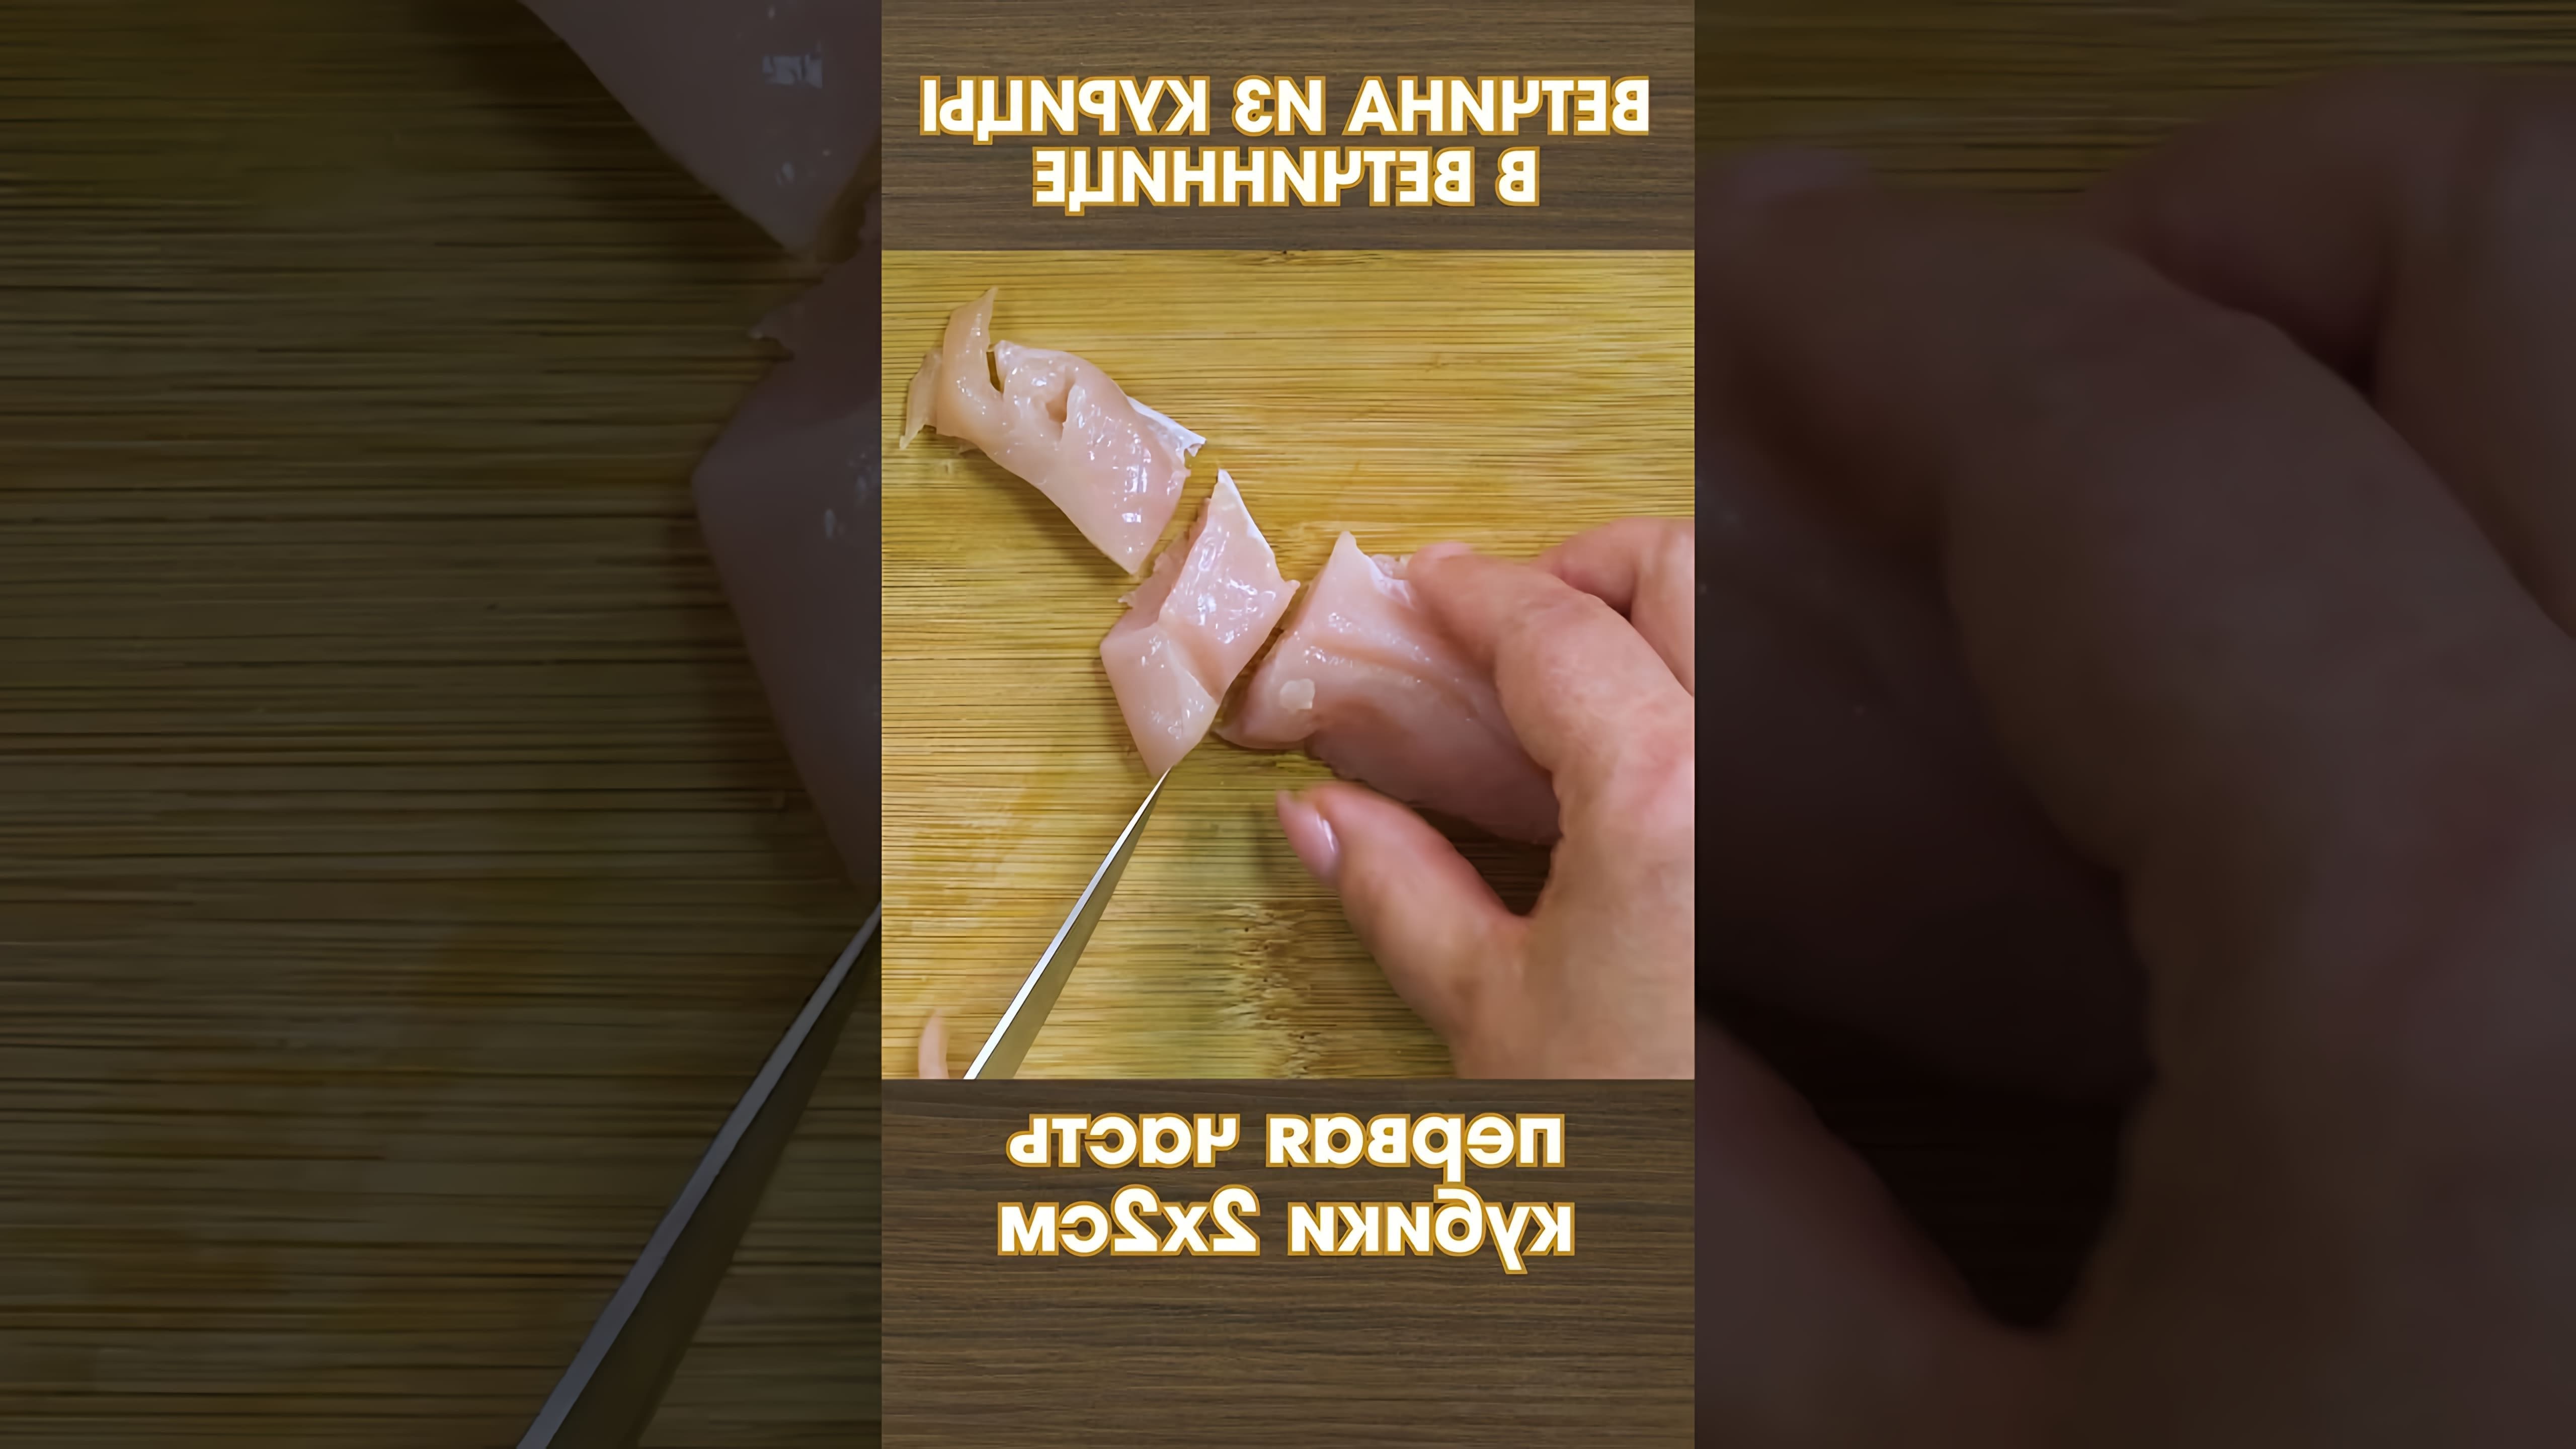 В этом видео демонстрируется процесс приготовления куриной ветчины с нитритной солью в ветчиннице в домашних условиях